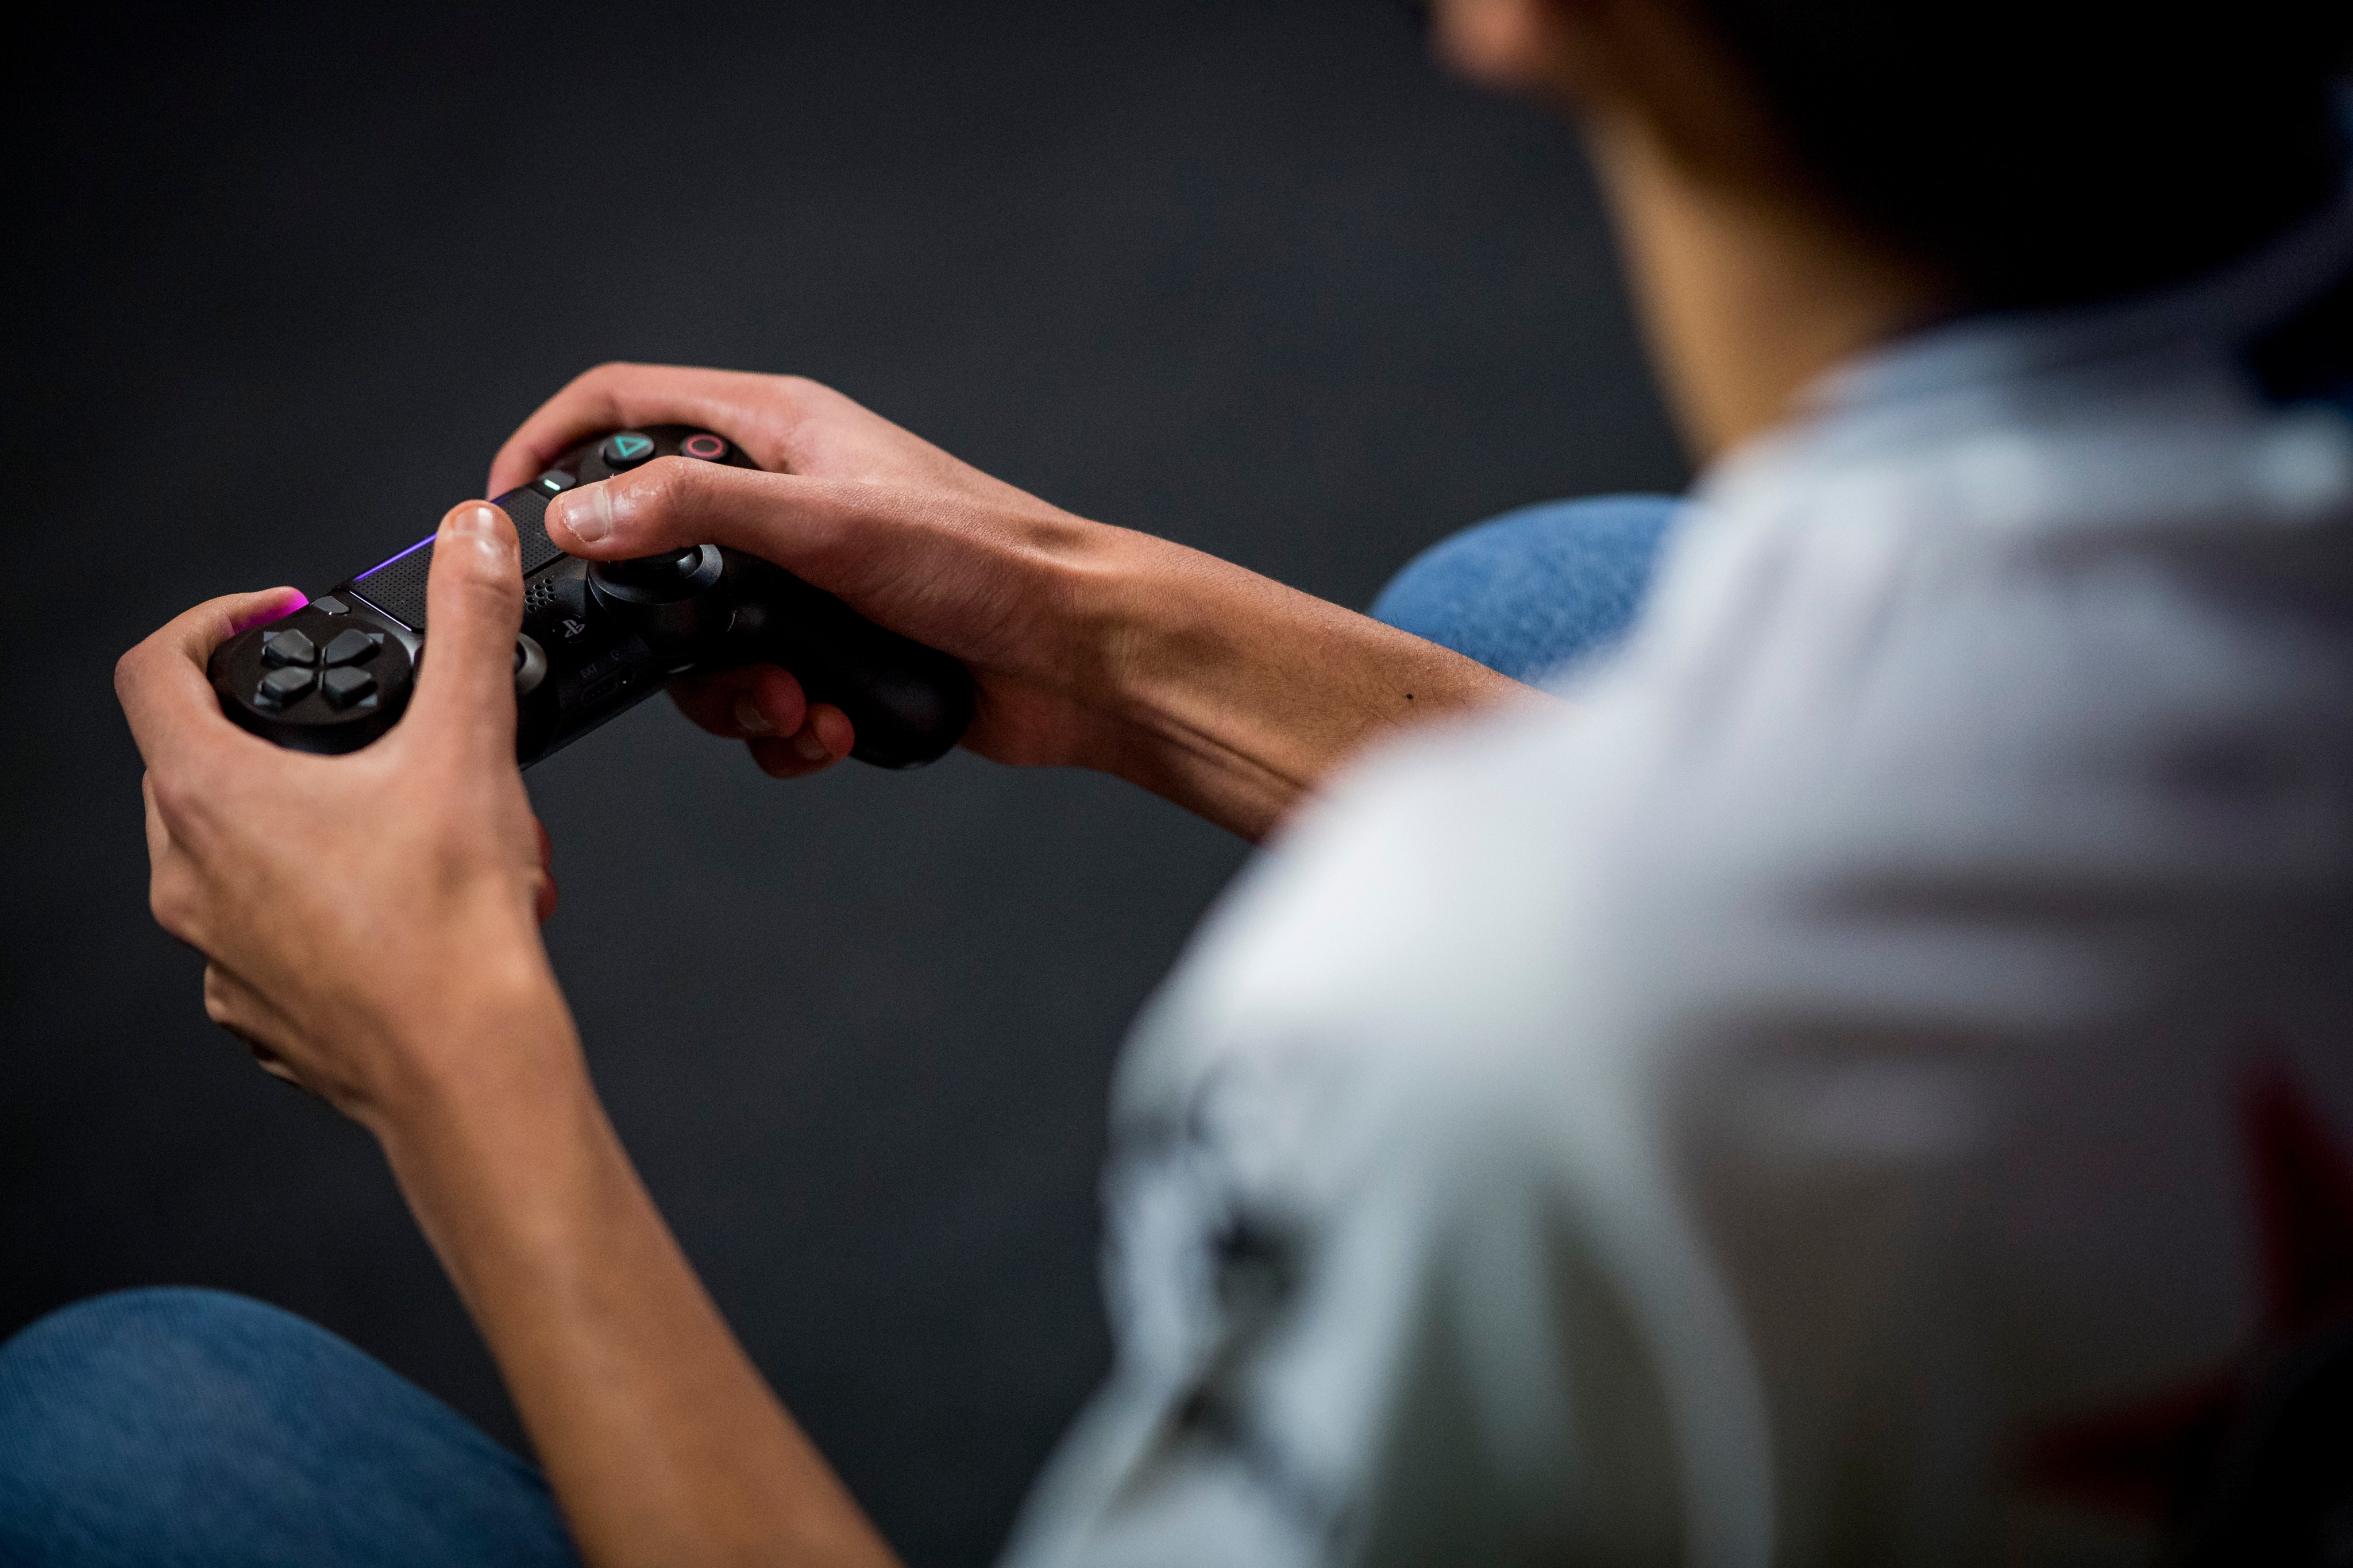 EA Sports FC 24 confirma que hombres y mujeres podrán jugar juntos en el  modo Ultimate Team, electronic arts, TECNOLOGIA